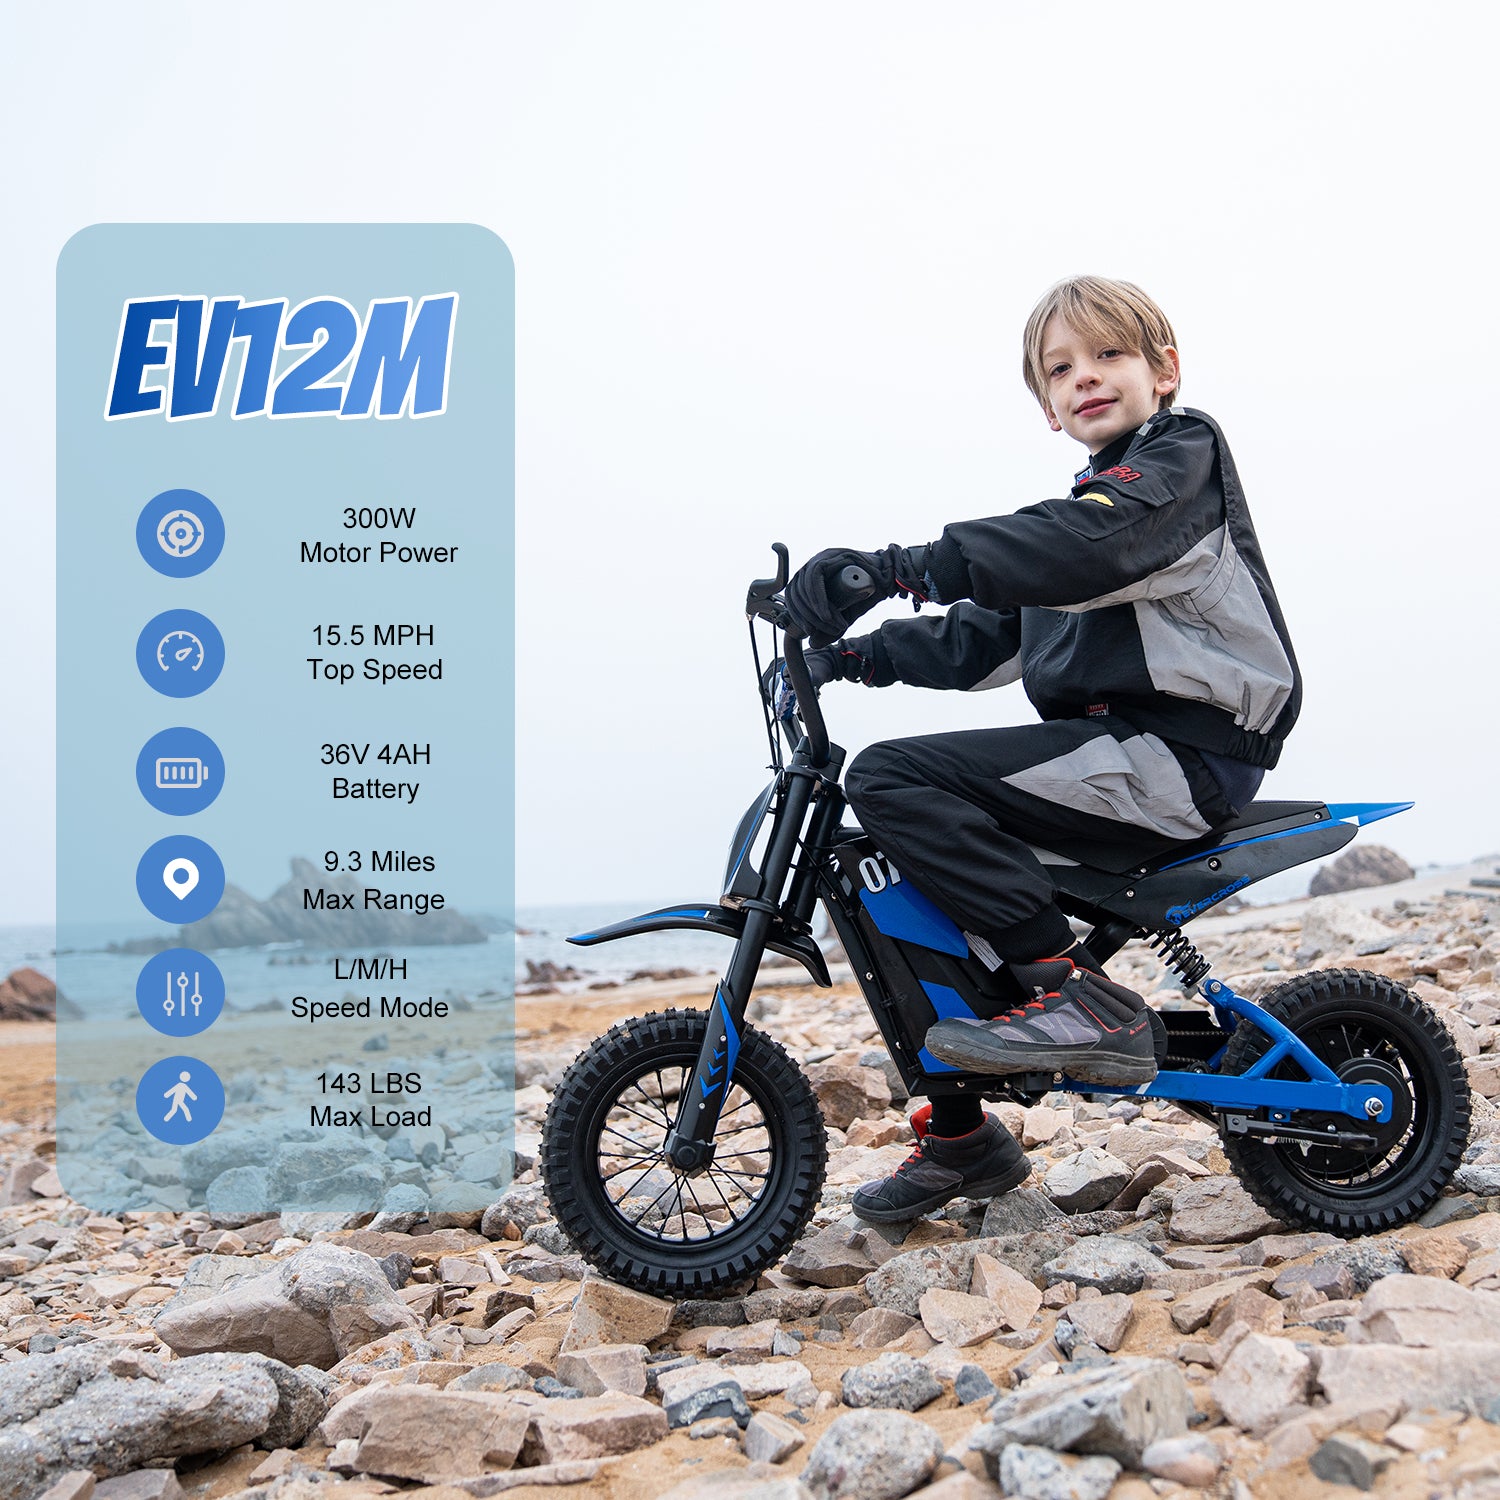 Evercross EV12M 300w Electric Dirt Bike